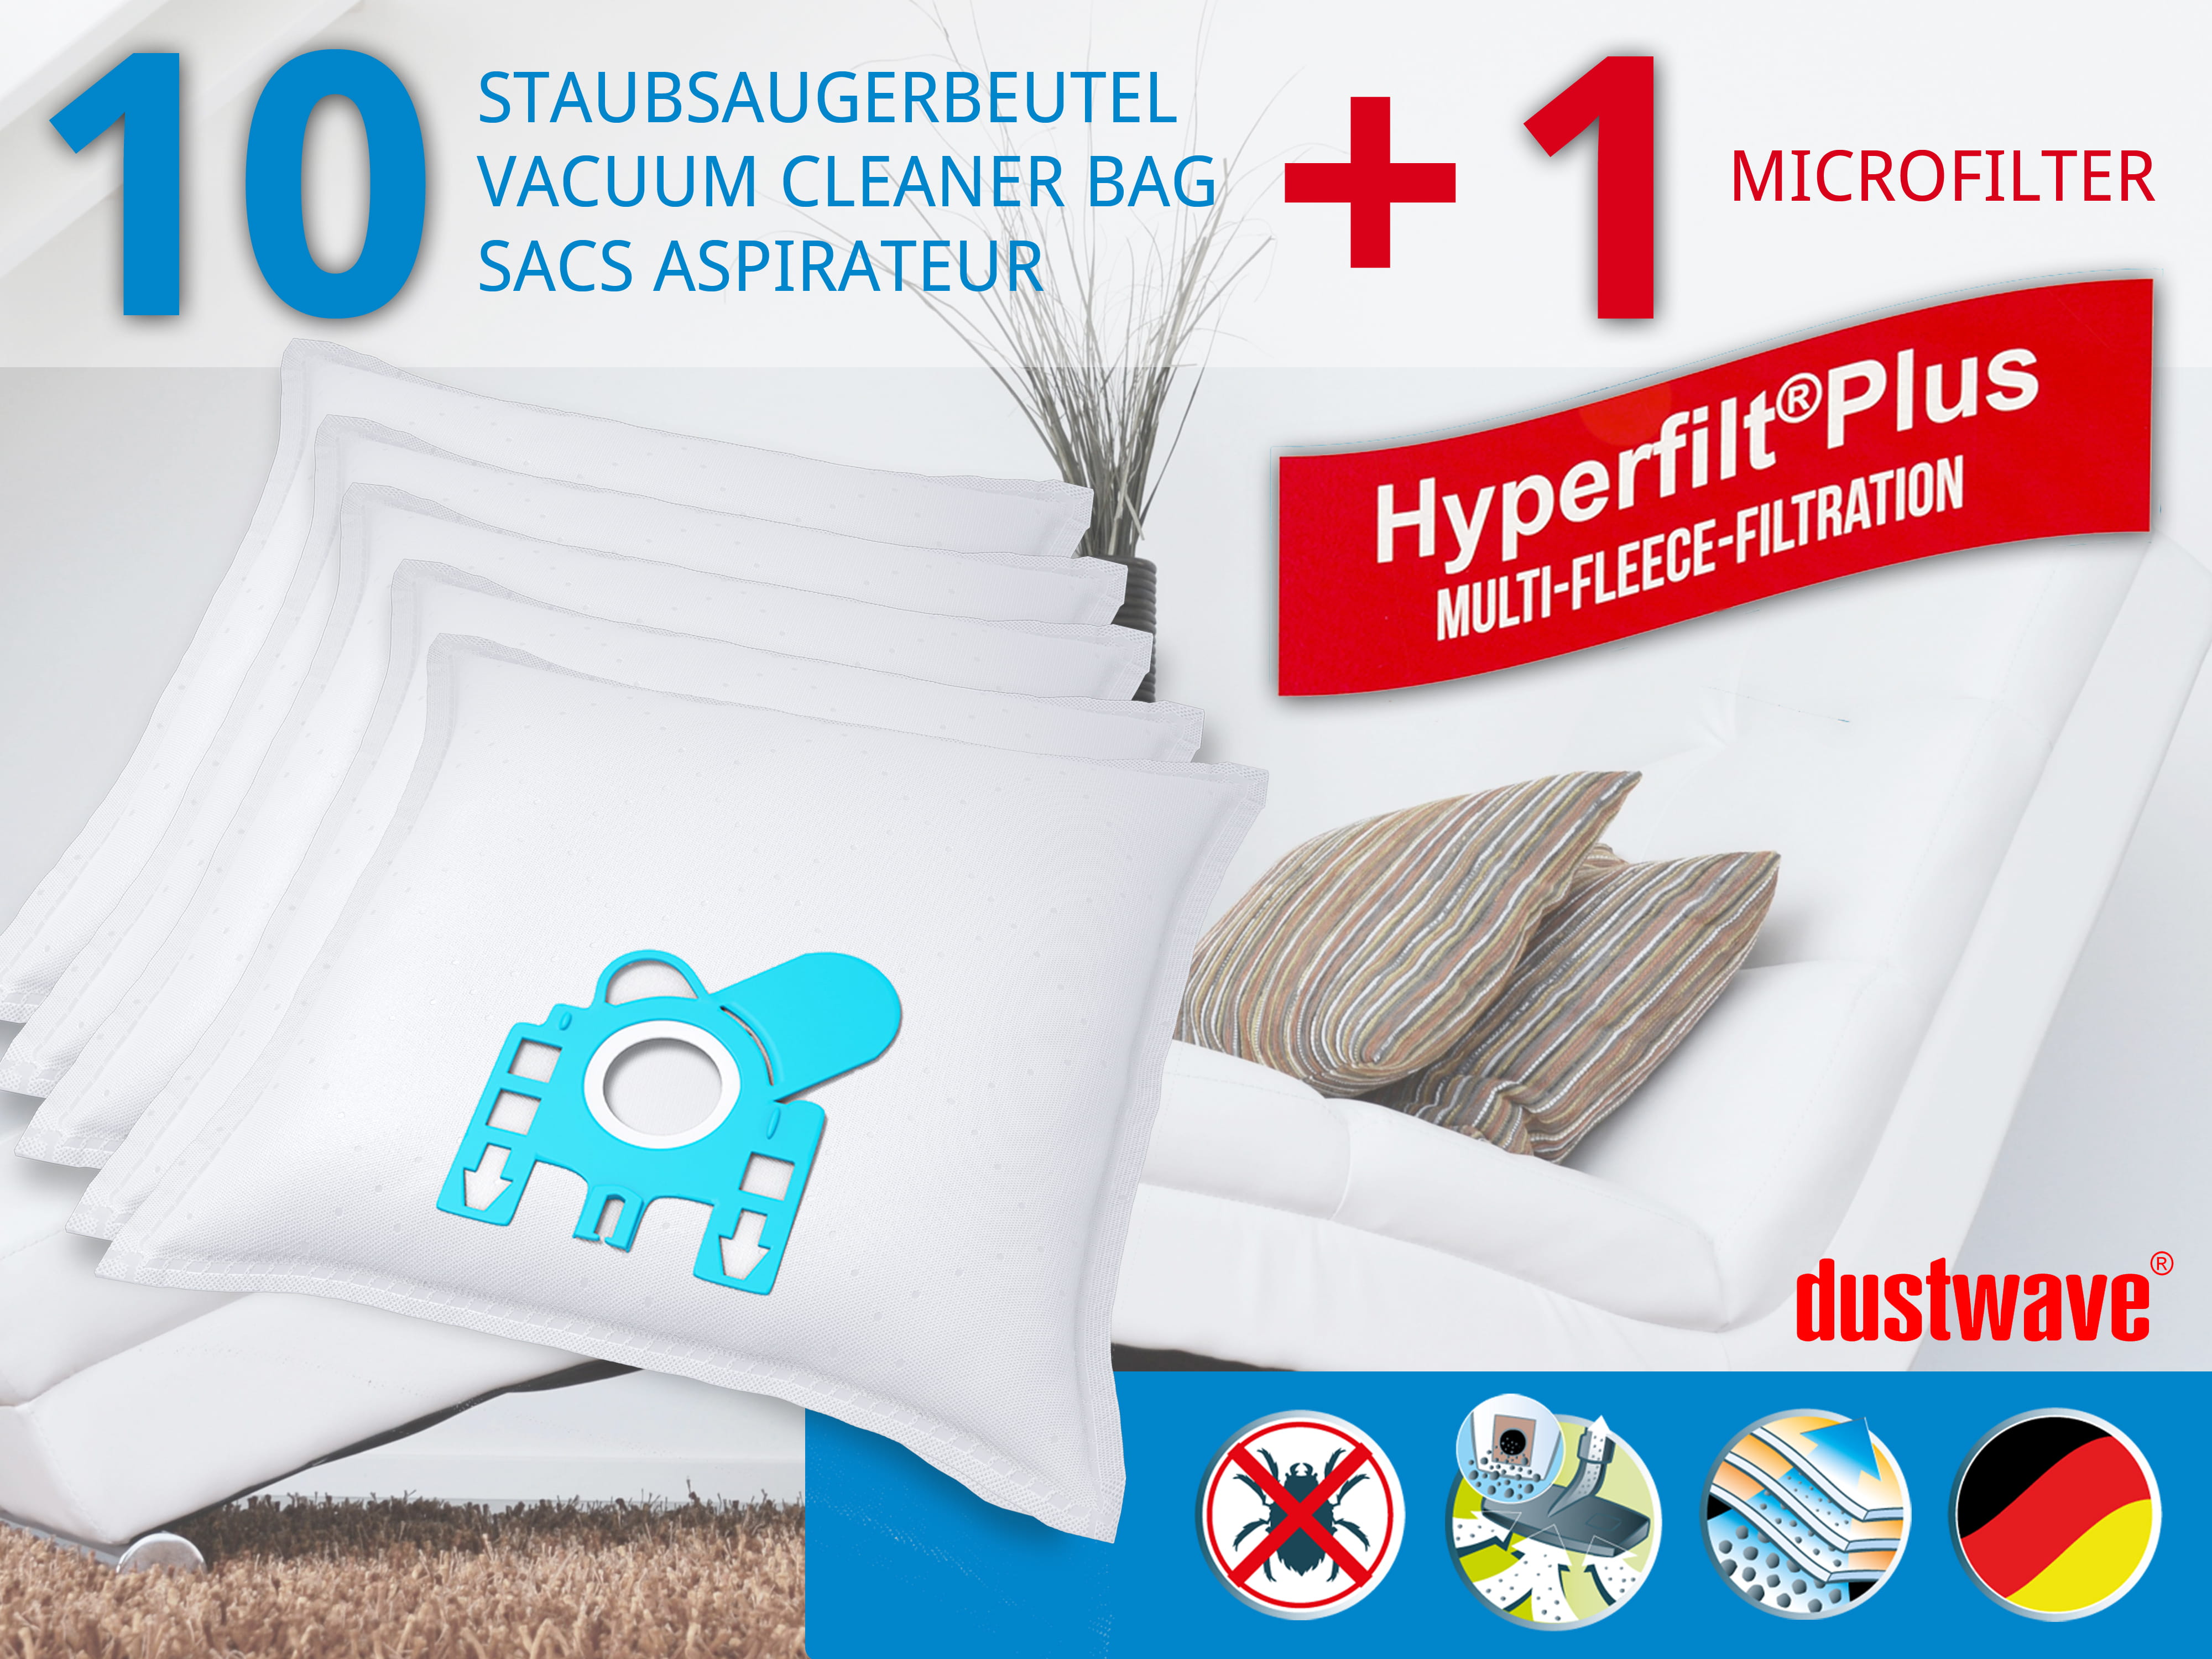 Dustwave® 10 Staubsaugerbeutel für Hoover Micropower SC 115 - hocheffizient, mehrlagiges Mikrovlies mit Hygieneverschluss - Made in Germany